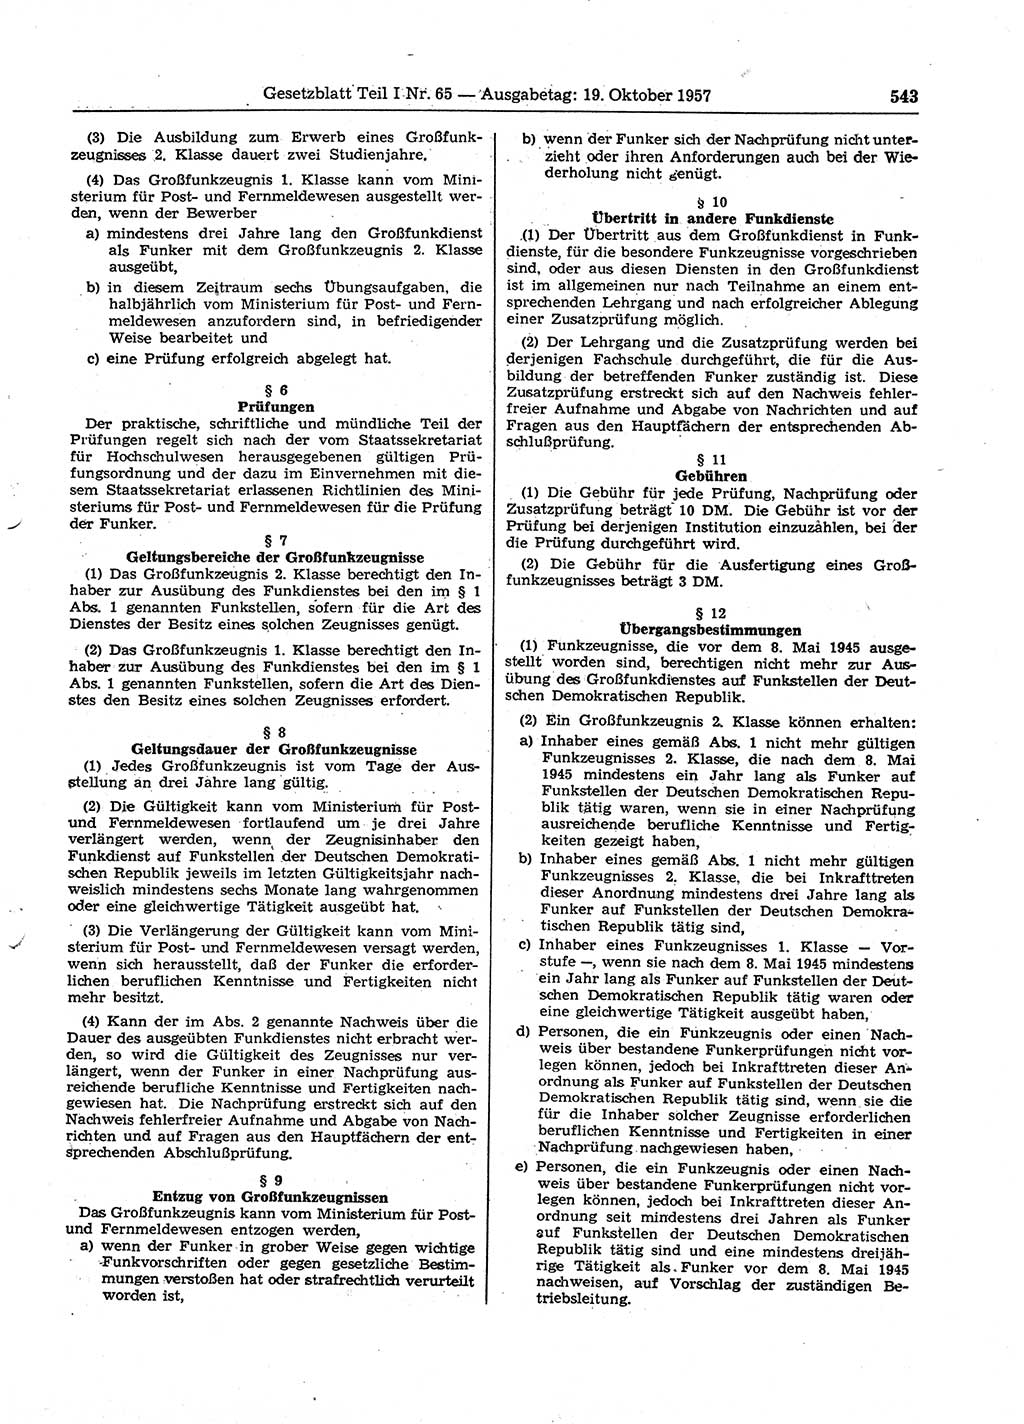 Gesetzblatt (GBl.) der Deutschen Demokratischen Republik (DDR) Teil Ⅰ 1957, Seite 543 (GBl. DDR Ⅰ 1957, S. 543)